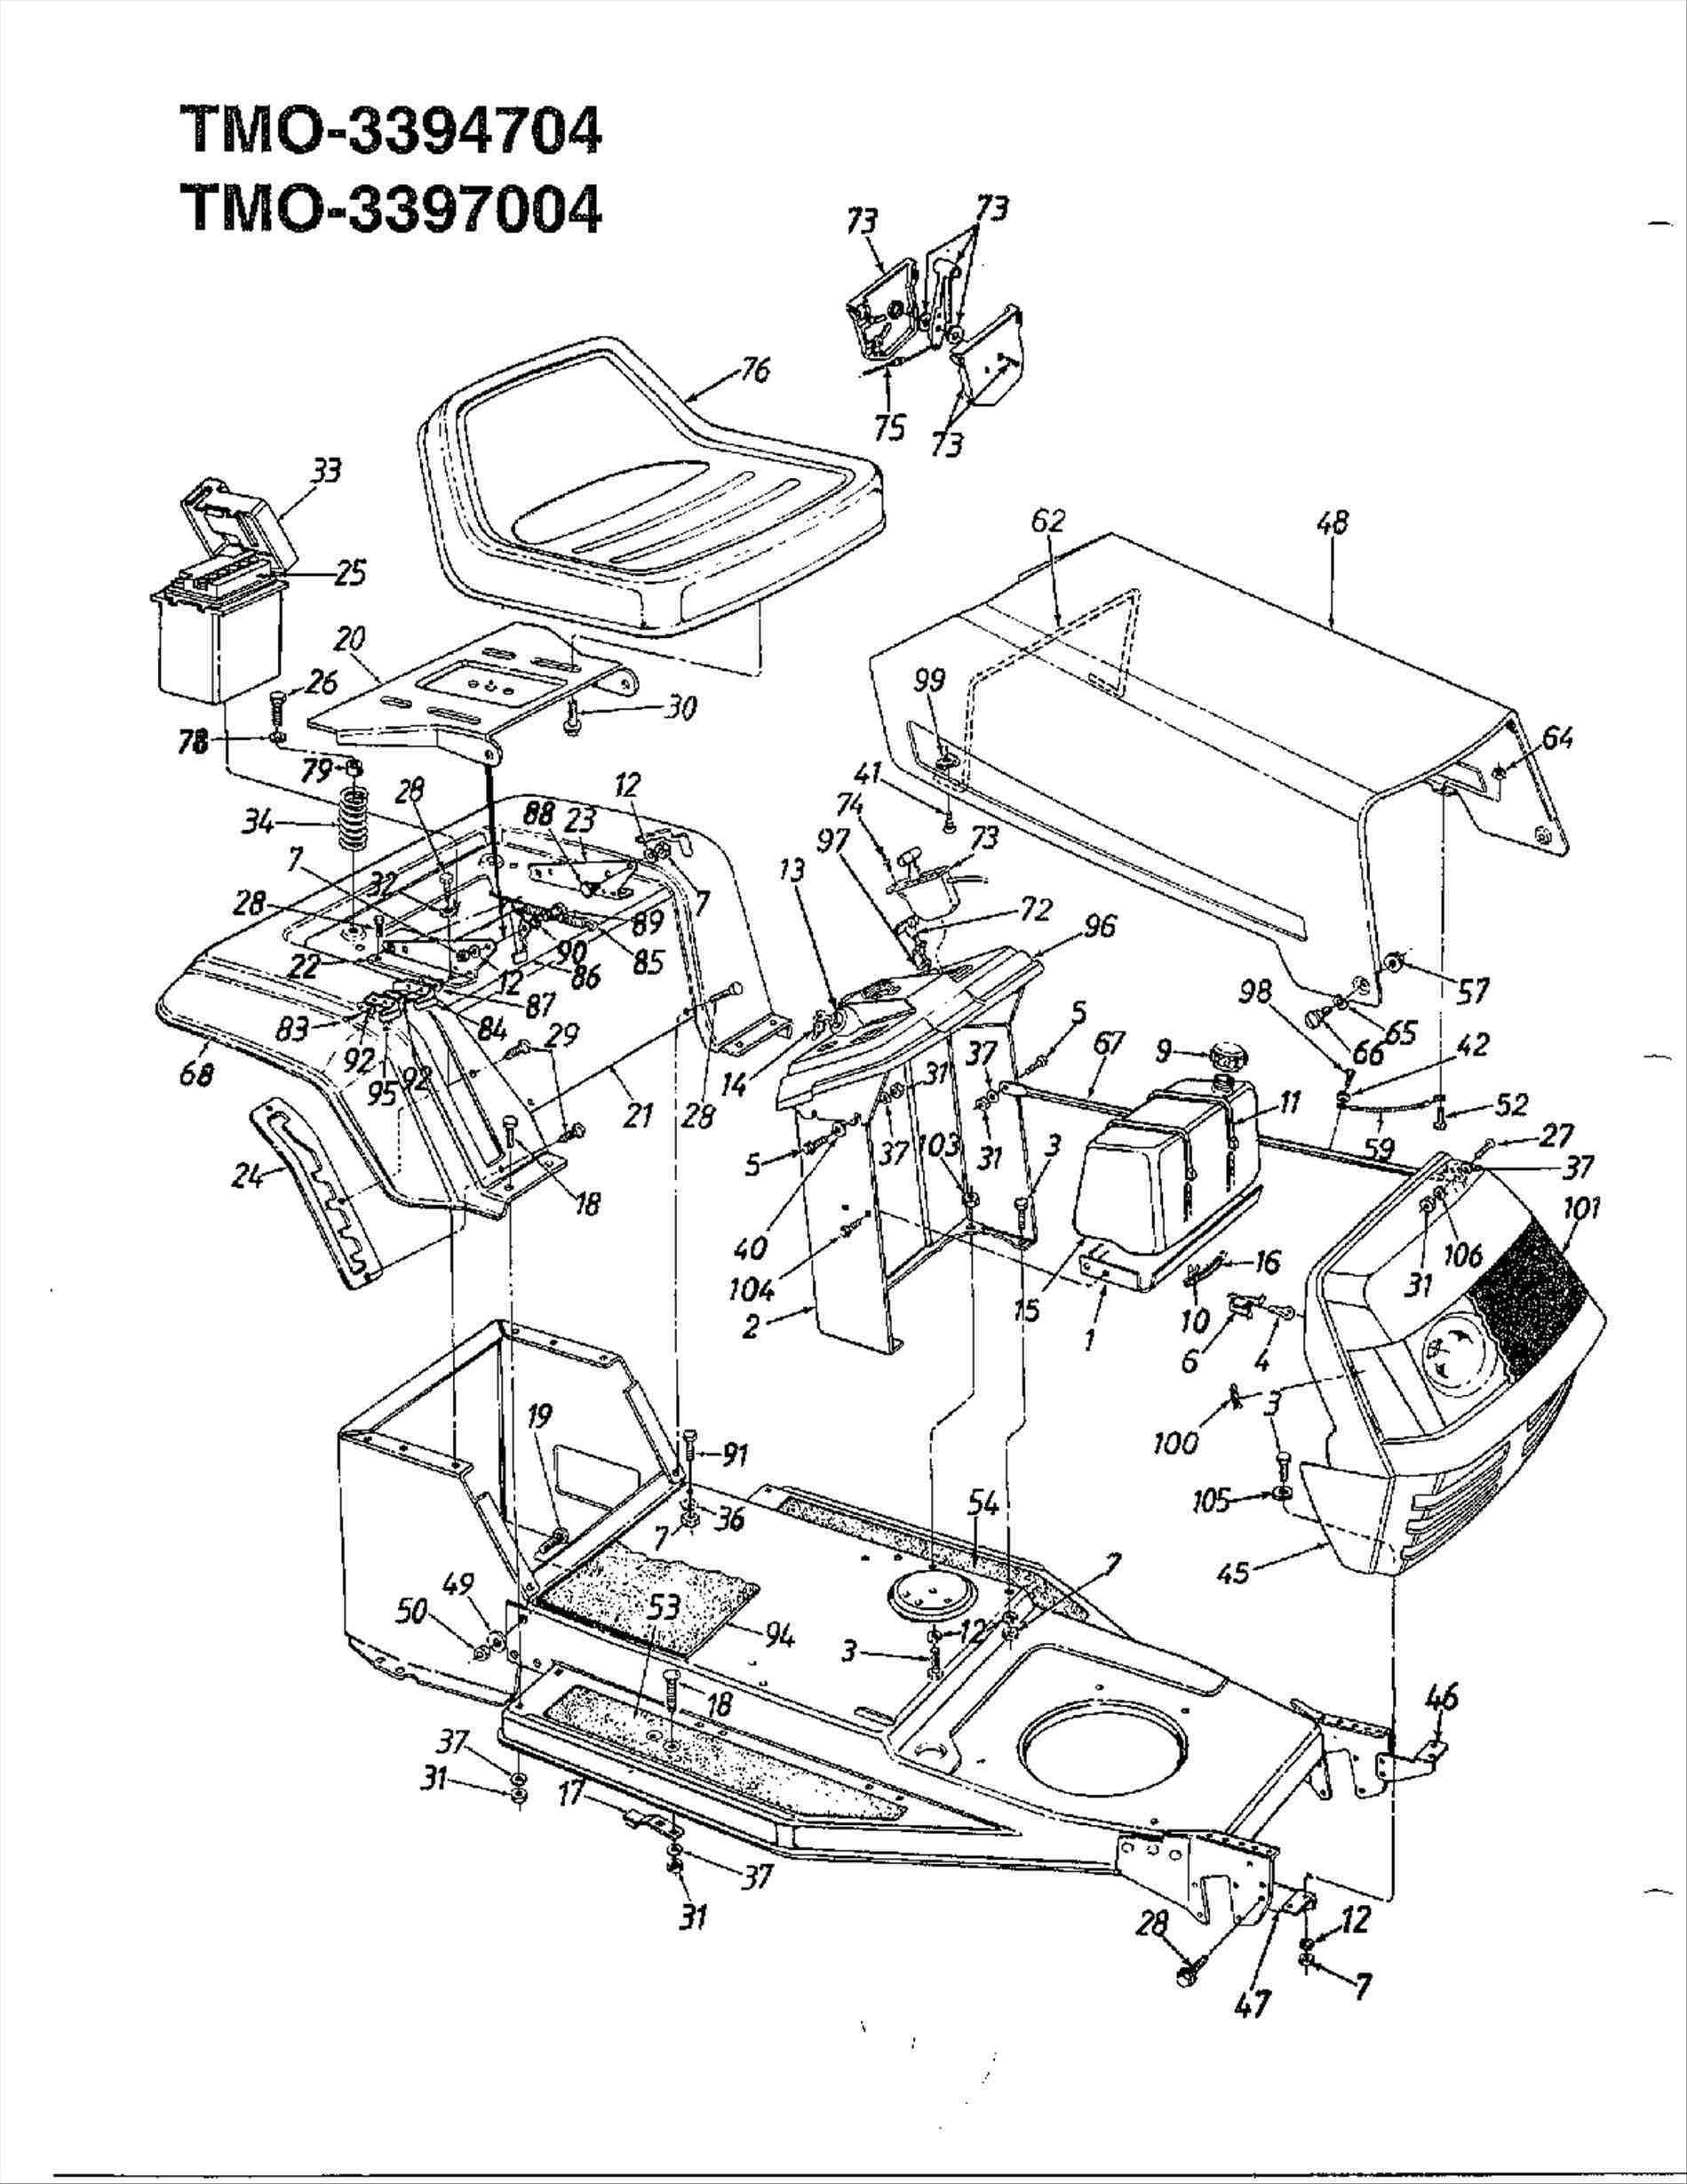 Craftsman Riding Mower Parts Diagram Wiring Diagram Besides John Deere Riding Mower Deck Belt Diagram